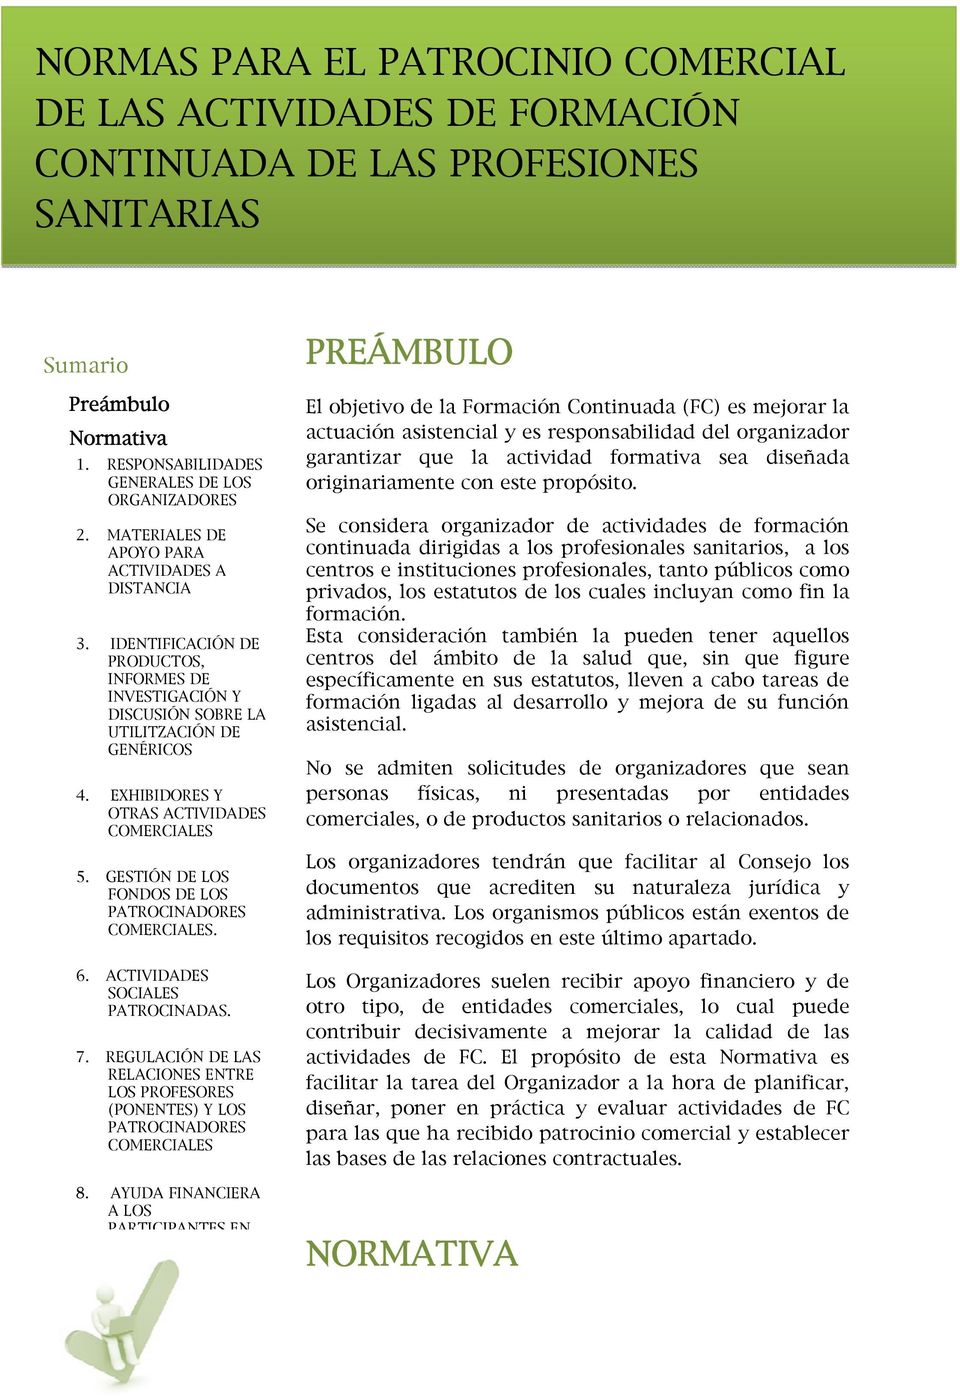 EXHIBIDORES Y OTRAS ACTIVIDADES COMERCIALES 5. GESTIÓN DE LOS FONDOS DE LOS PATROCINADORES COMERCIALES. 6. ACTIVIDADES SOCIALES PATROCINADAS. 7.